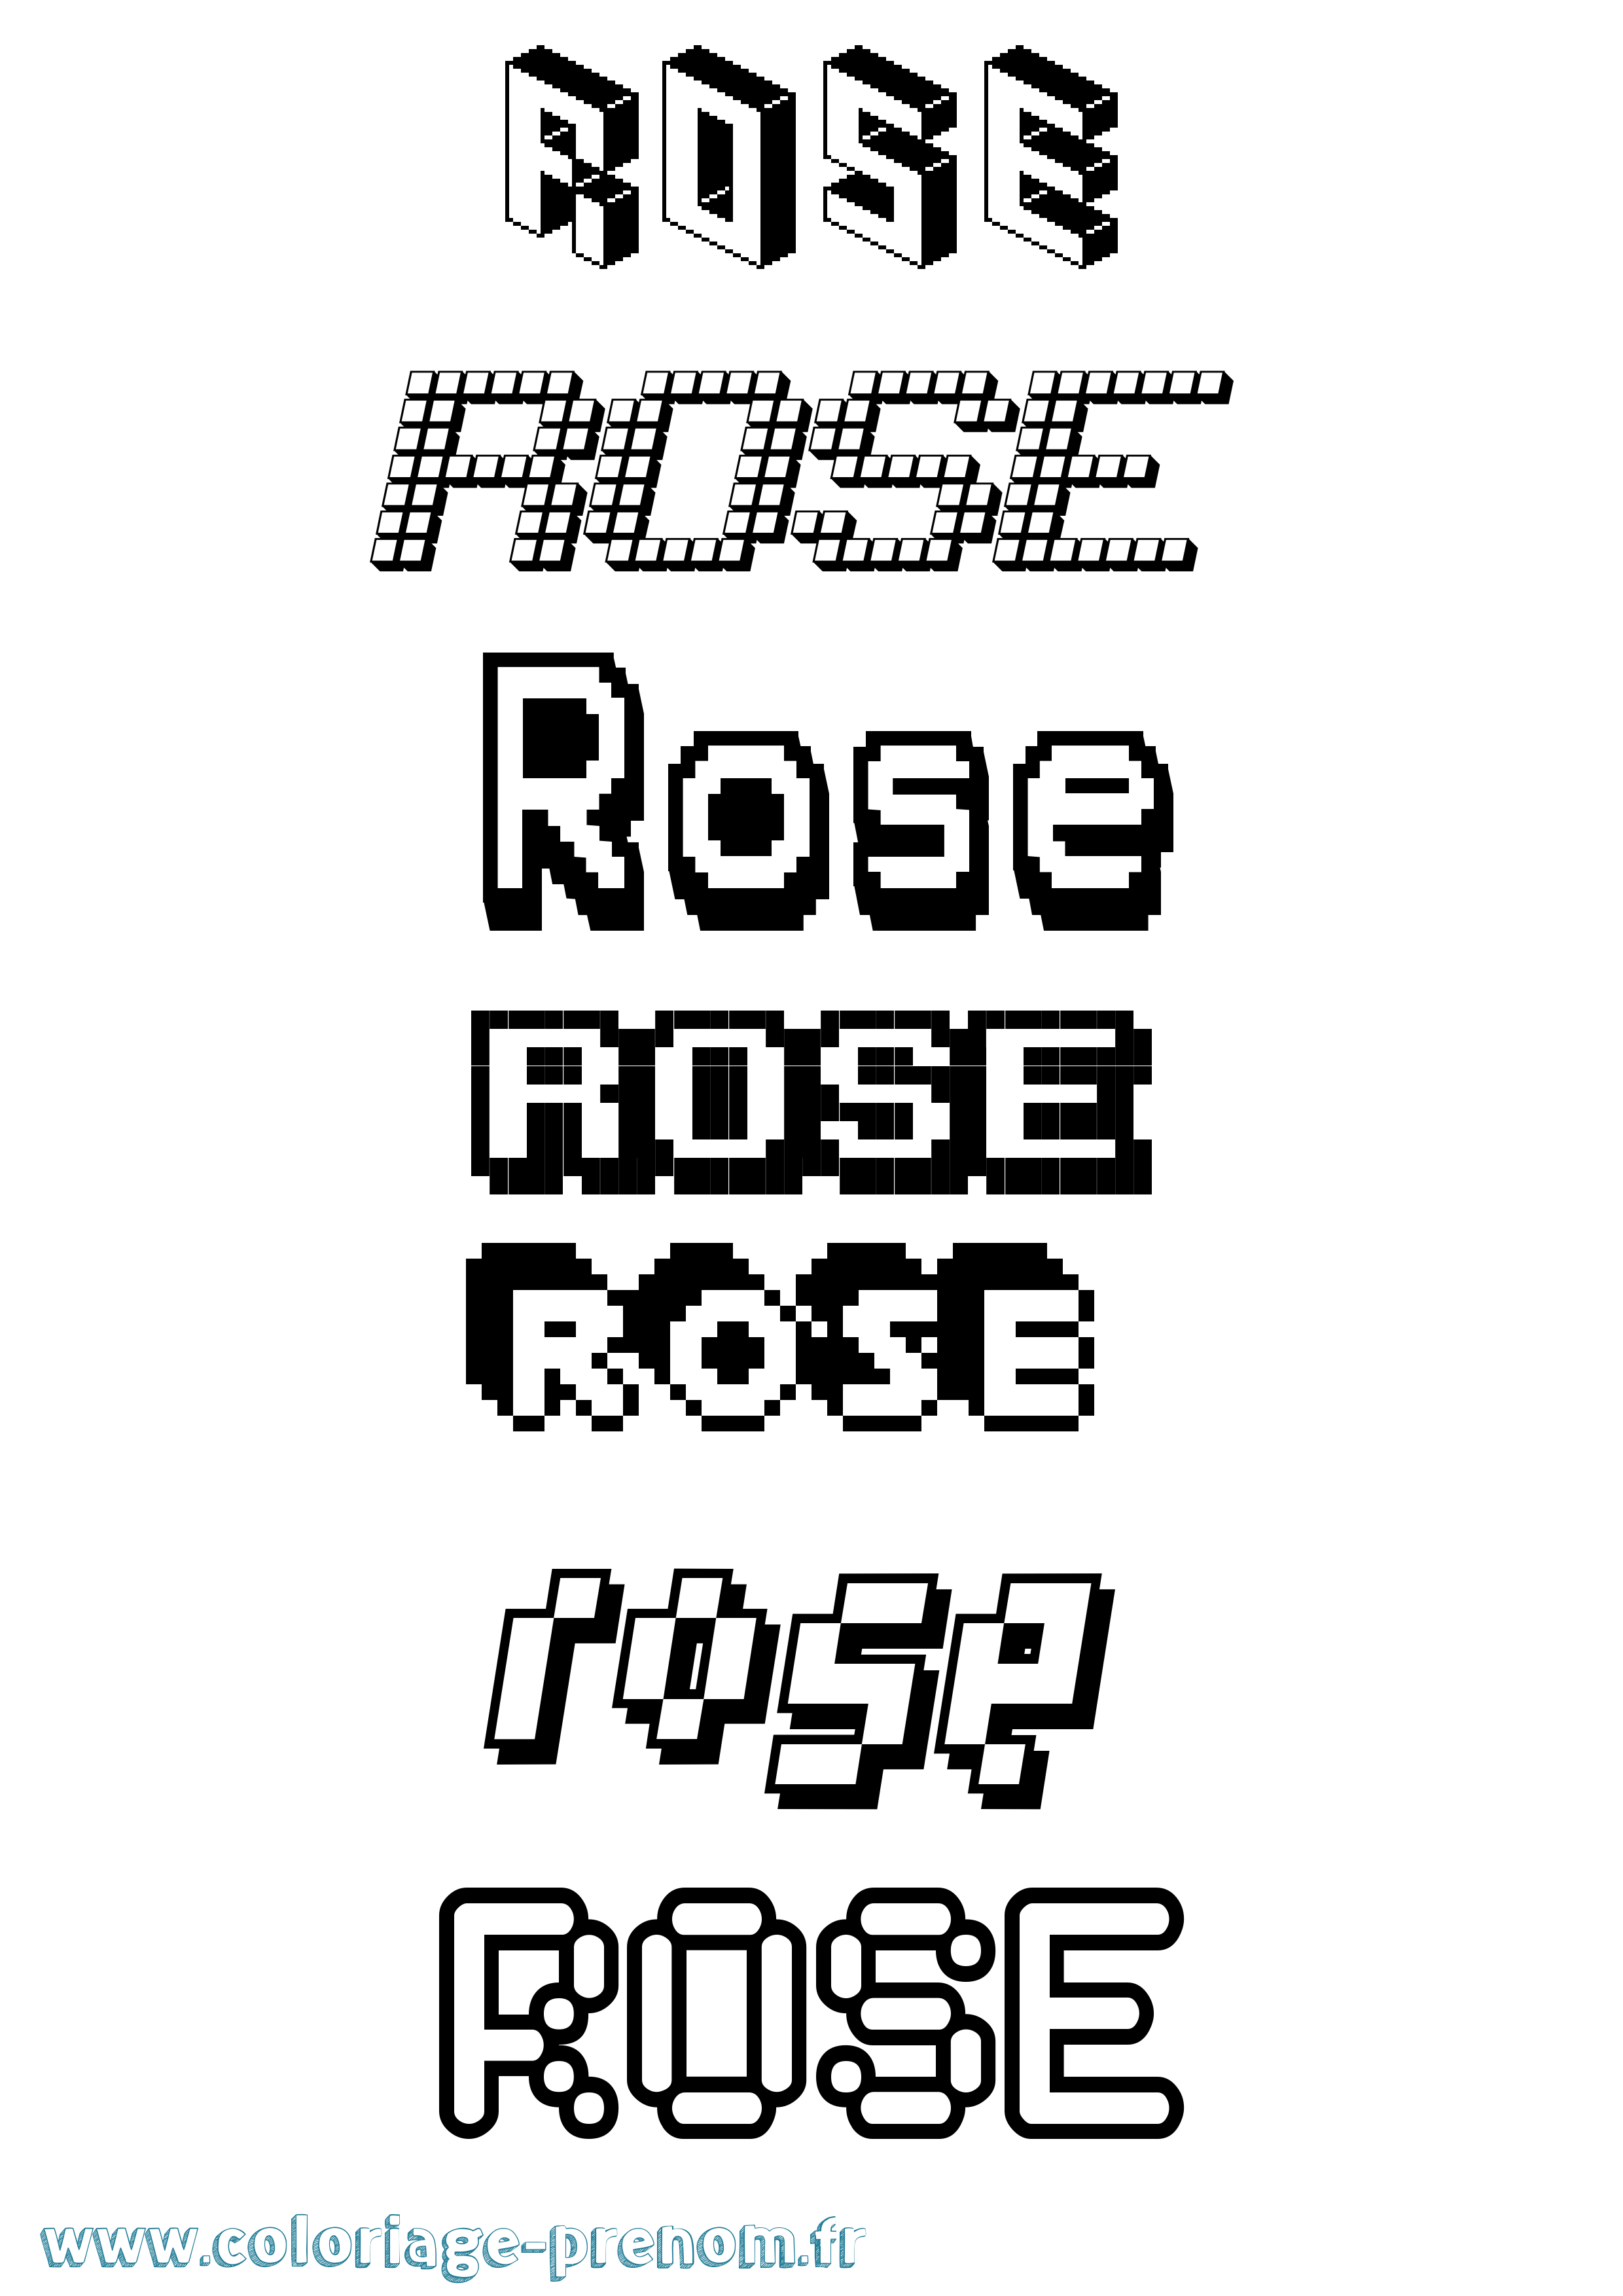 Coloriage prénom Rose Pixel